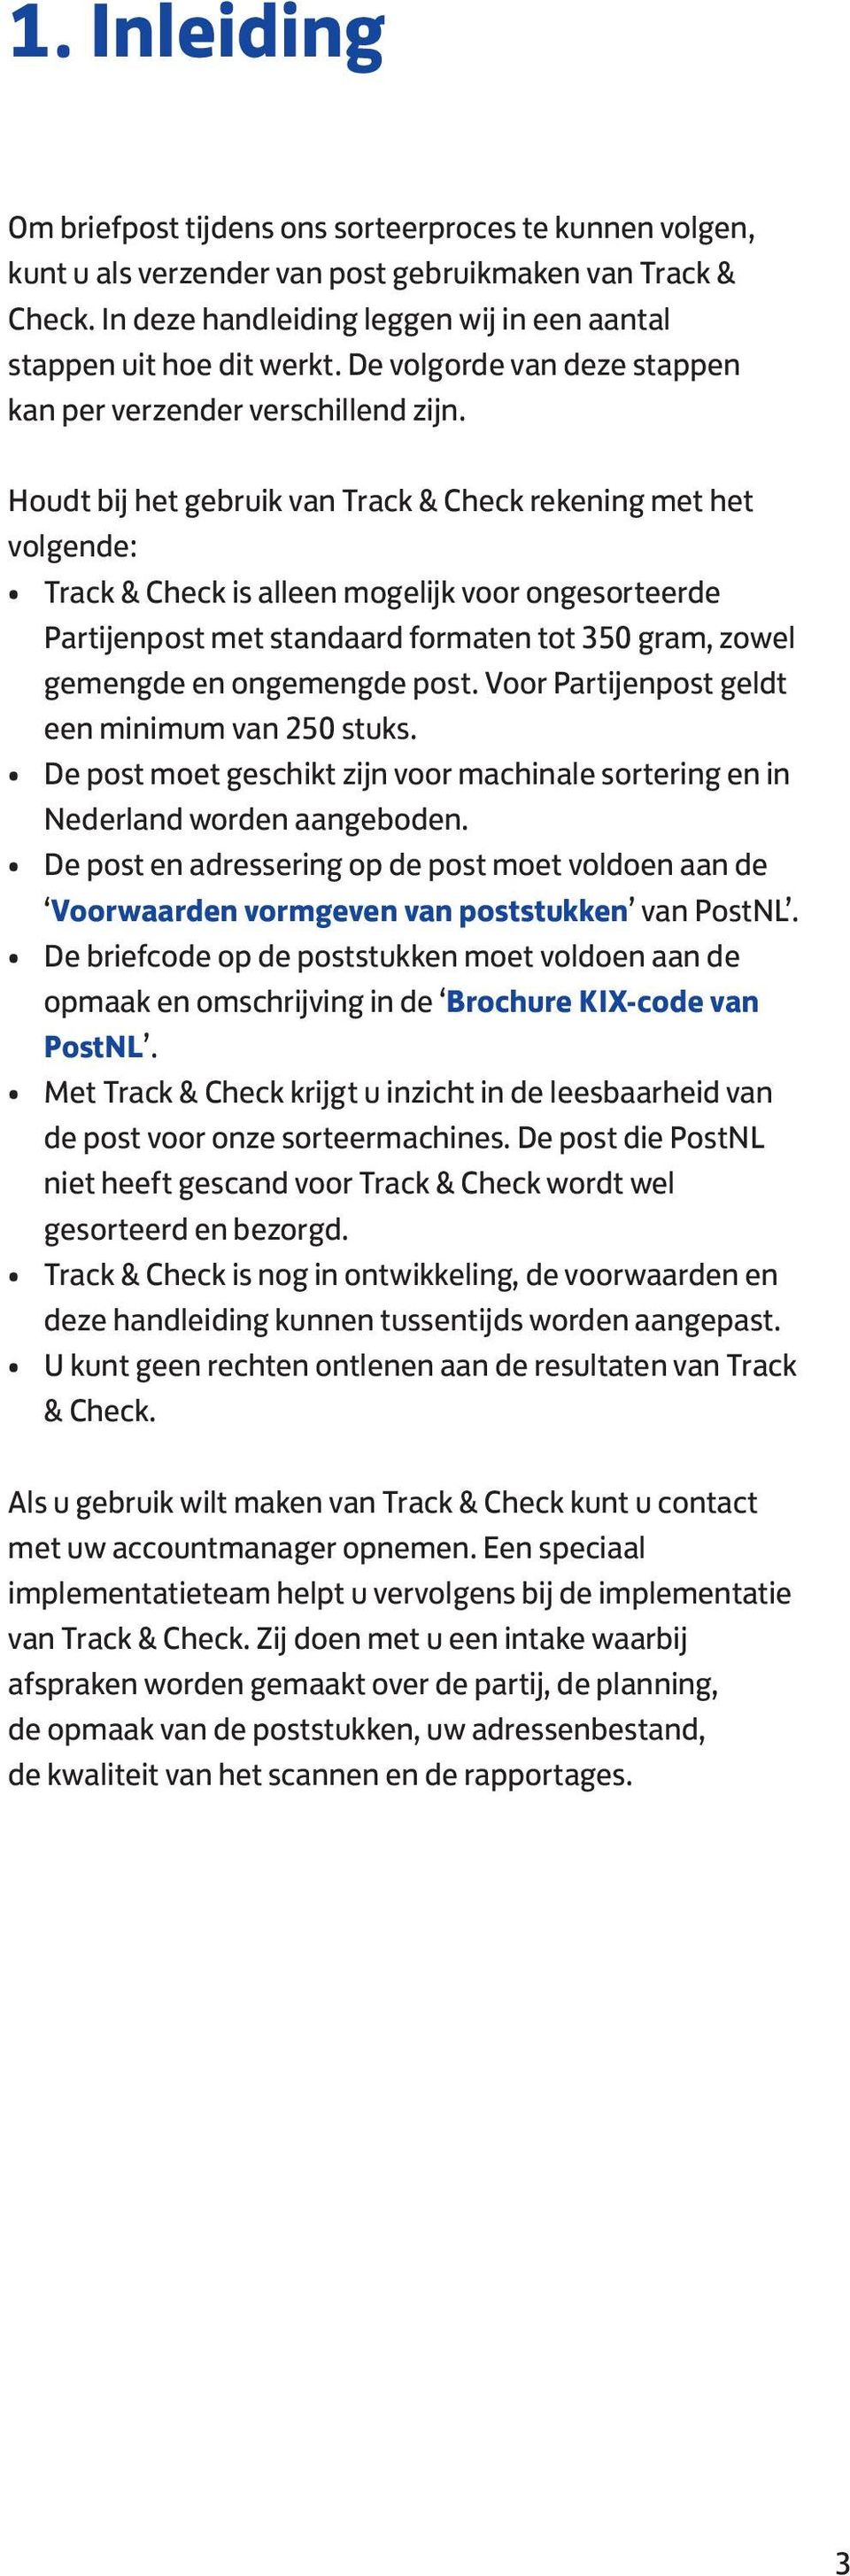 Houdt bij het gebruik van Track & Check rekening met het volgende: Track & Check is alleen mogelijk voor ongesorteerde Partijenpost met standaard formaten tot 350 gram, zowel gemengde en ongemengde